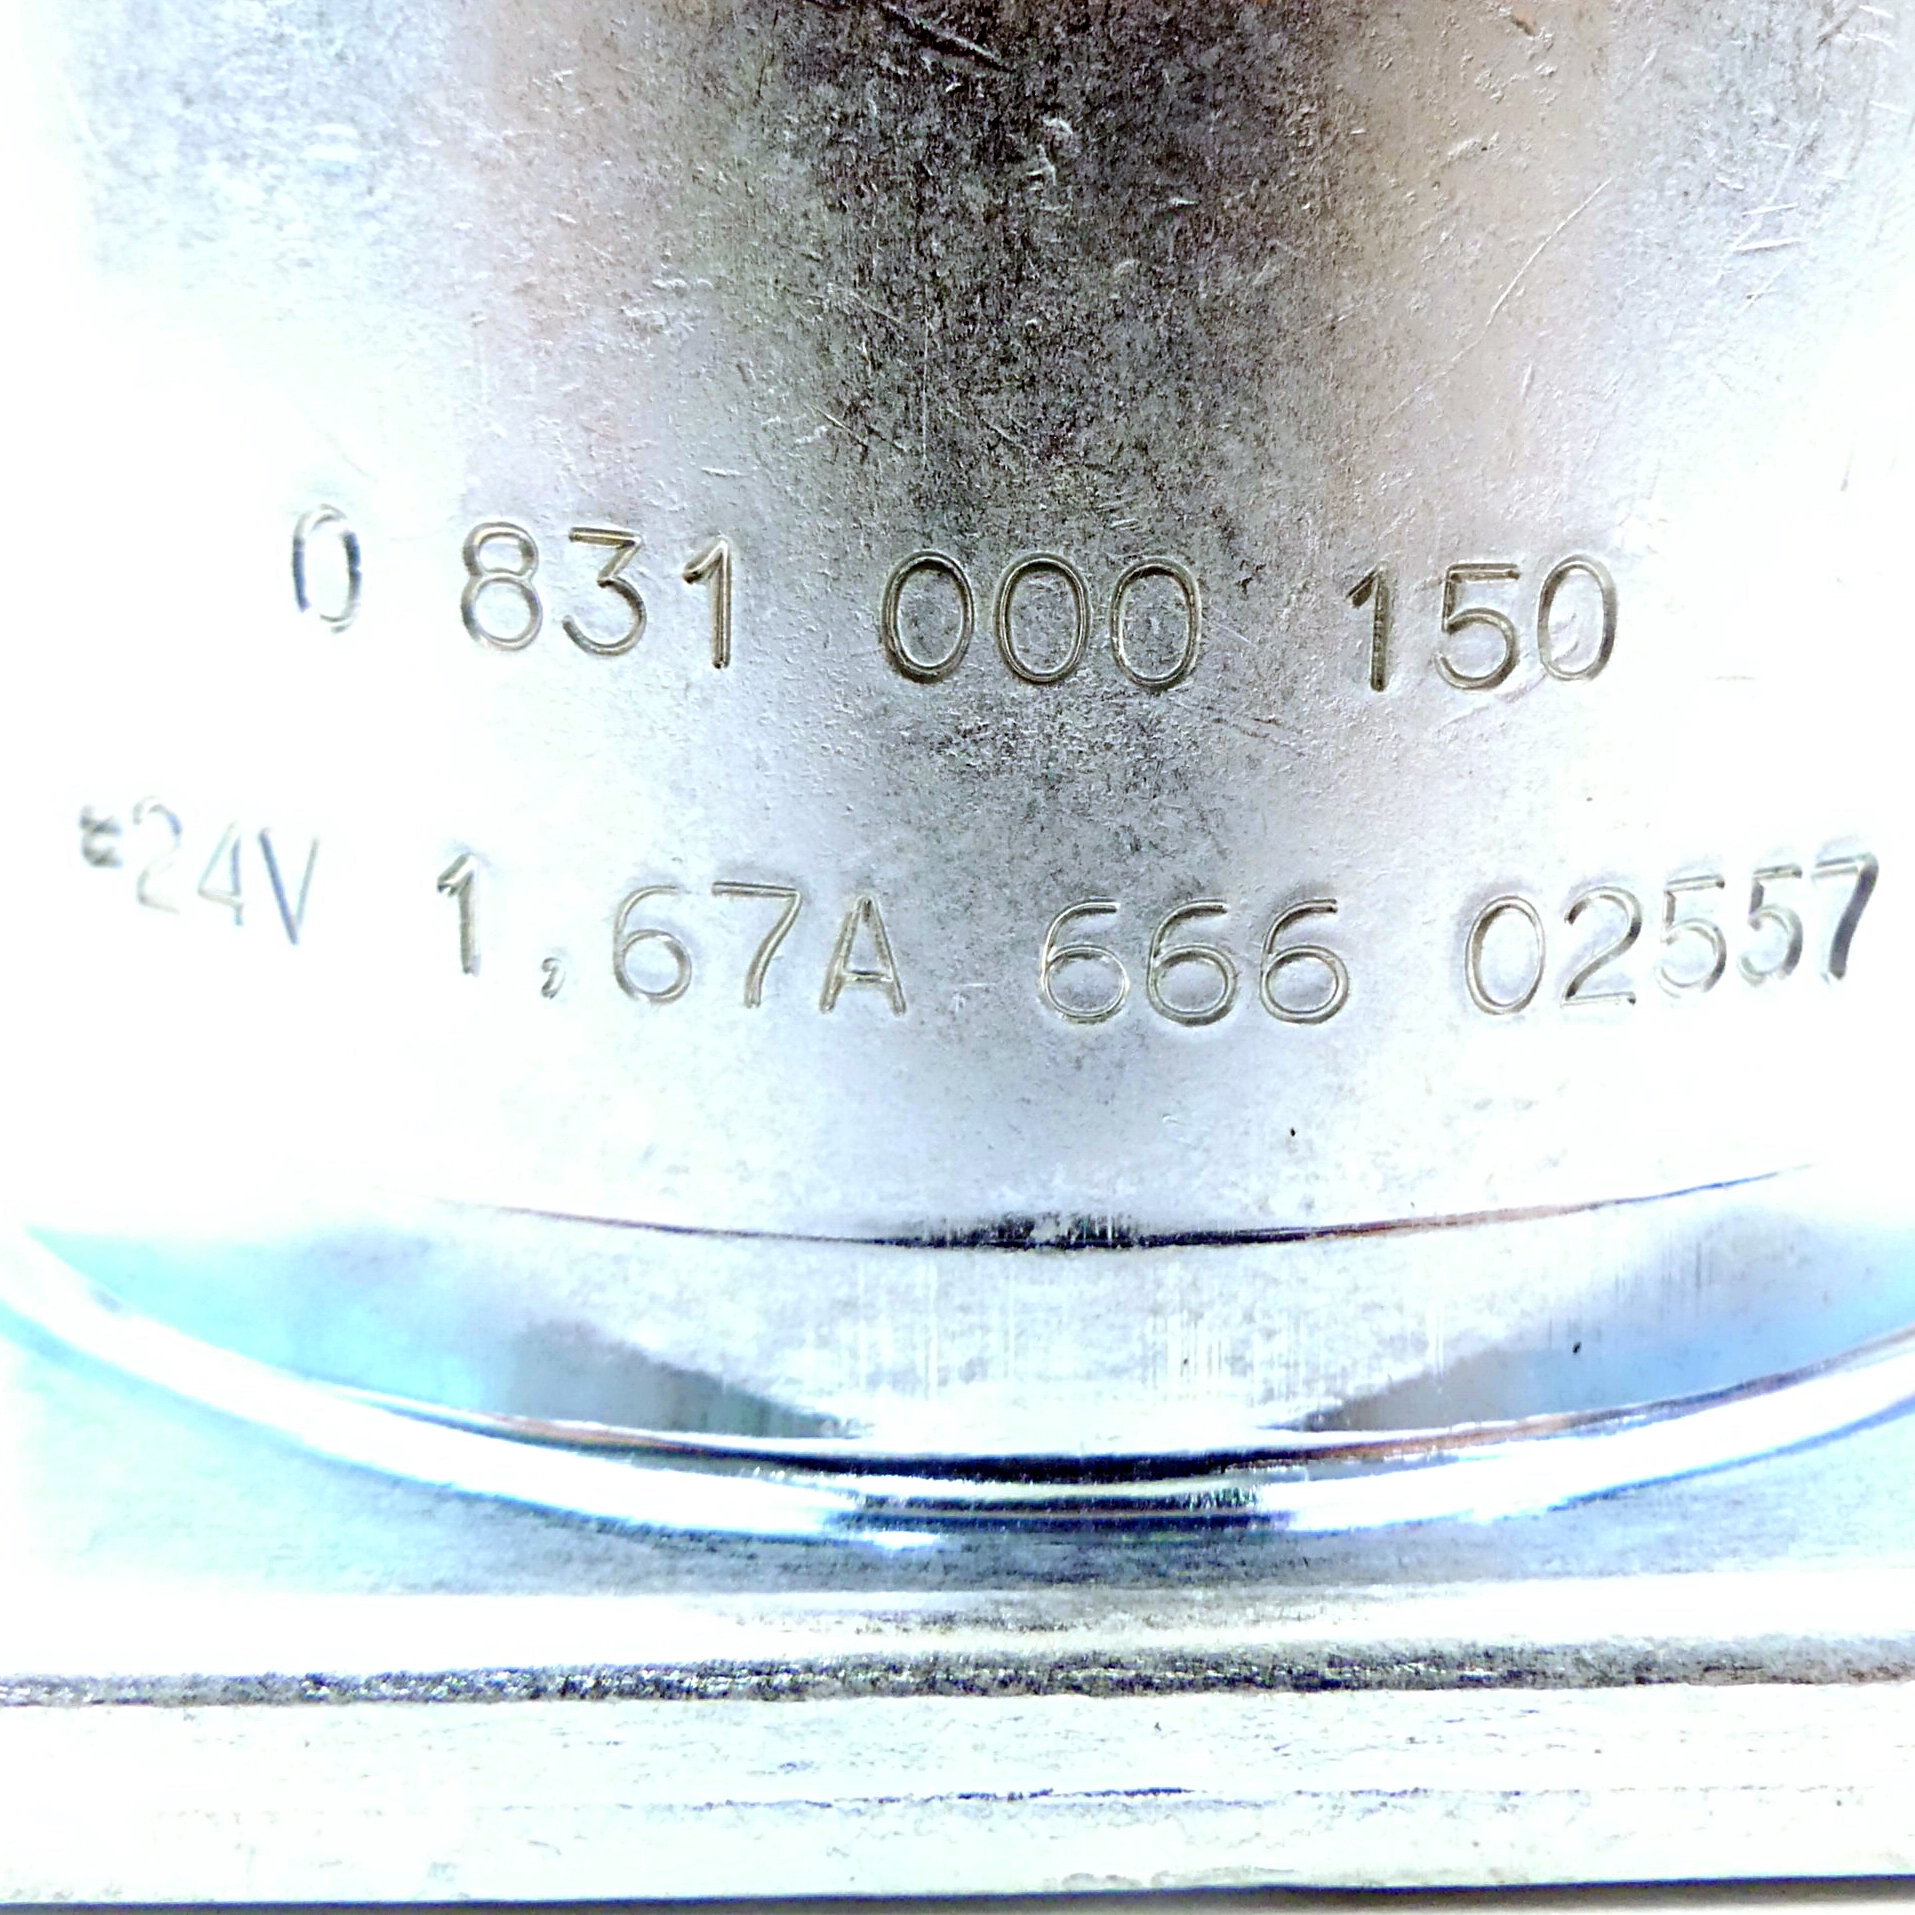 Solenoid coil 0 831 000 150 